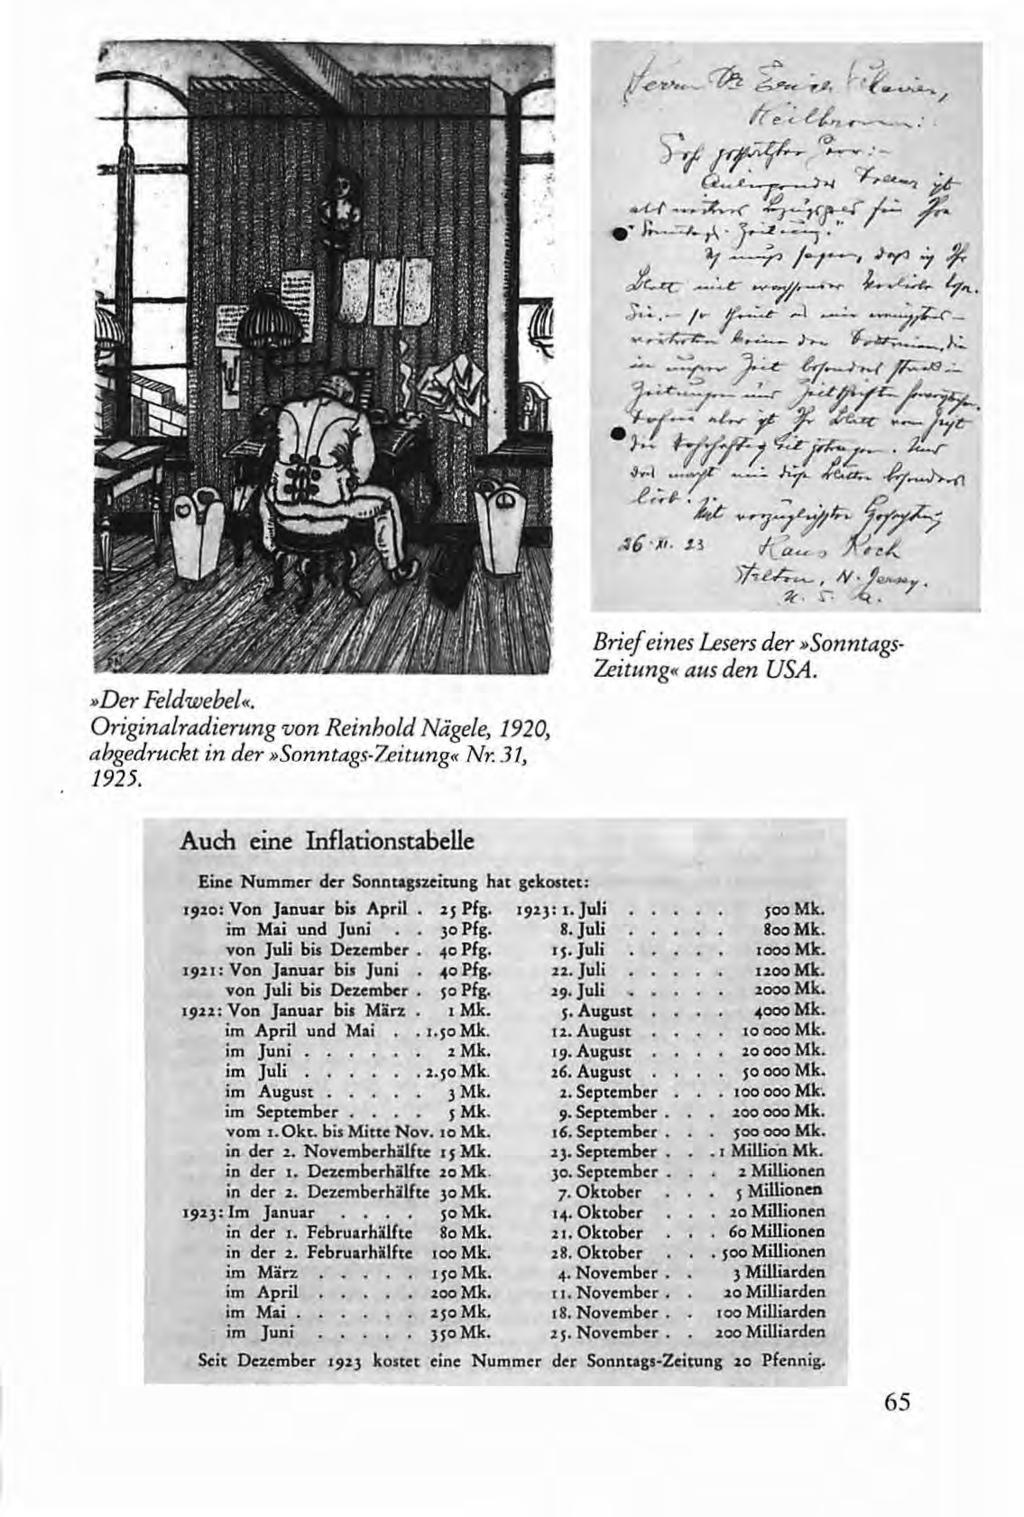 »Der Feldwebel«. Originalradierung von Reinhold Nägele, 1920, abgedruckt in der»sonntags-zeitung«nr. 31, 1925. Brief eines Lesers der»sonntags Zeitung«aus den USA.